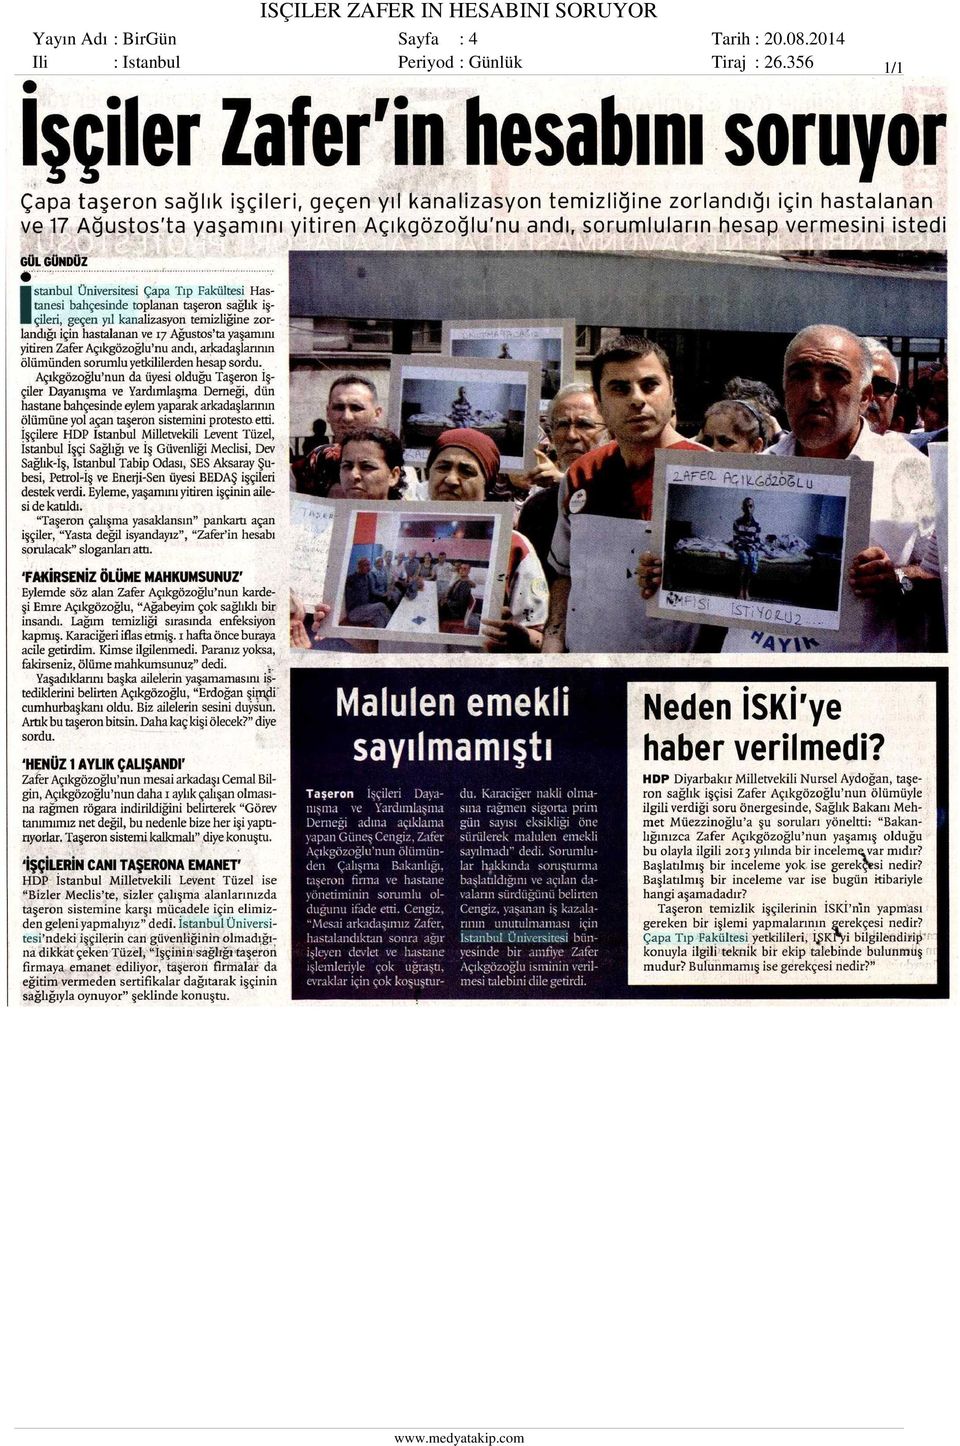 Sayfa : 4 Ili : Istanbul